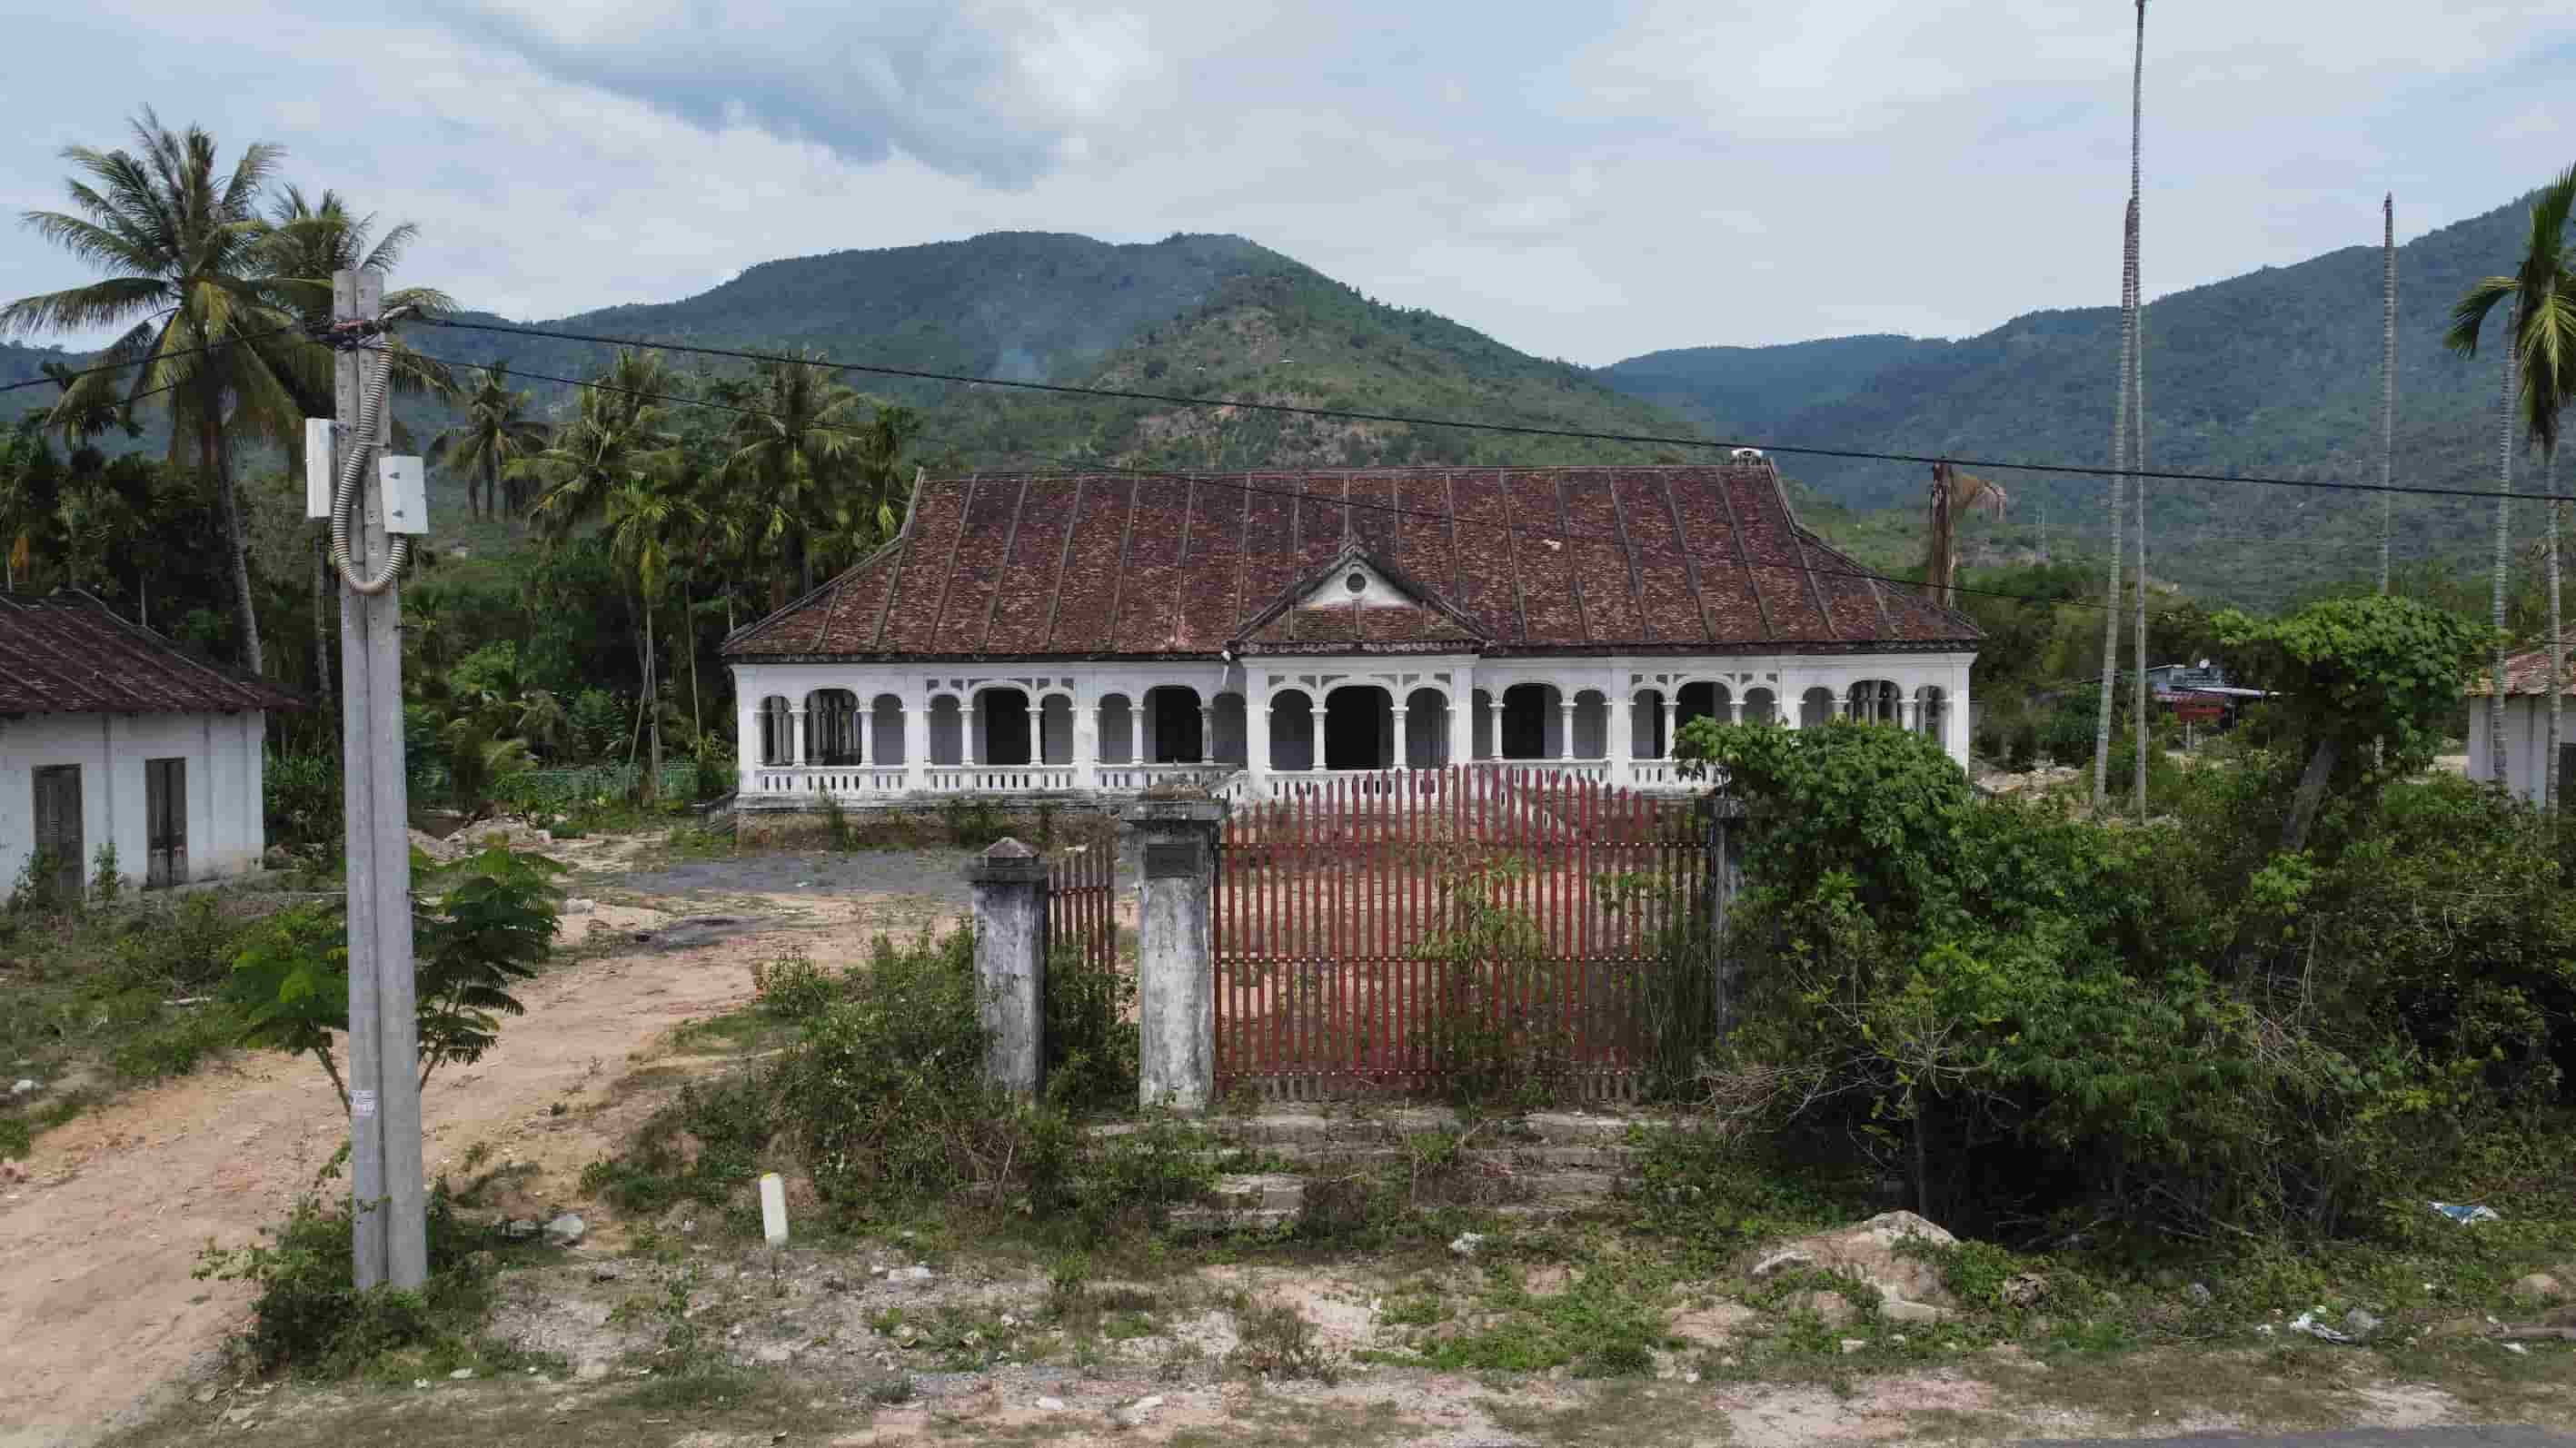 Khác với hình ảnh trước đây, hiện khu bảo tồn nhà xưa ông Hai Thái hoang tàn, xuống cấp vì không có đơn vị quản lý. 